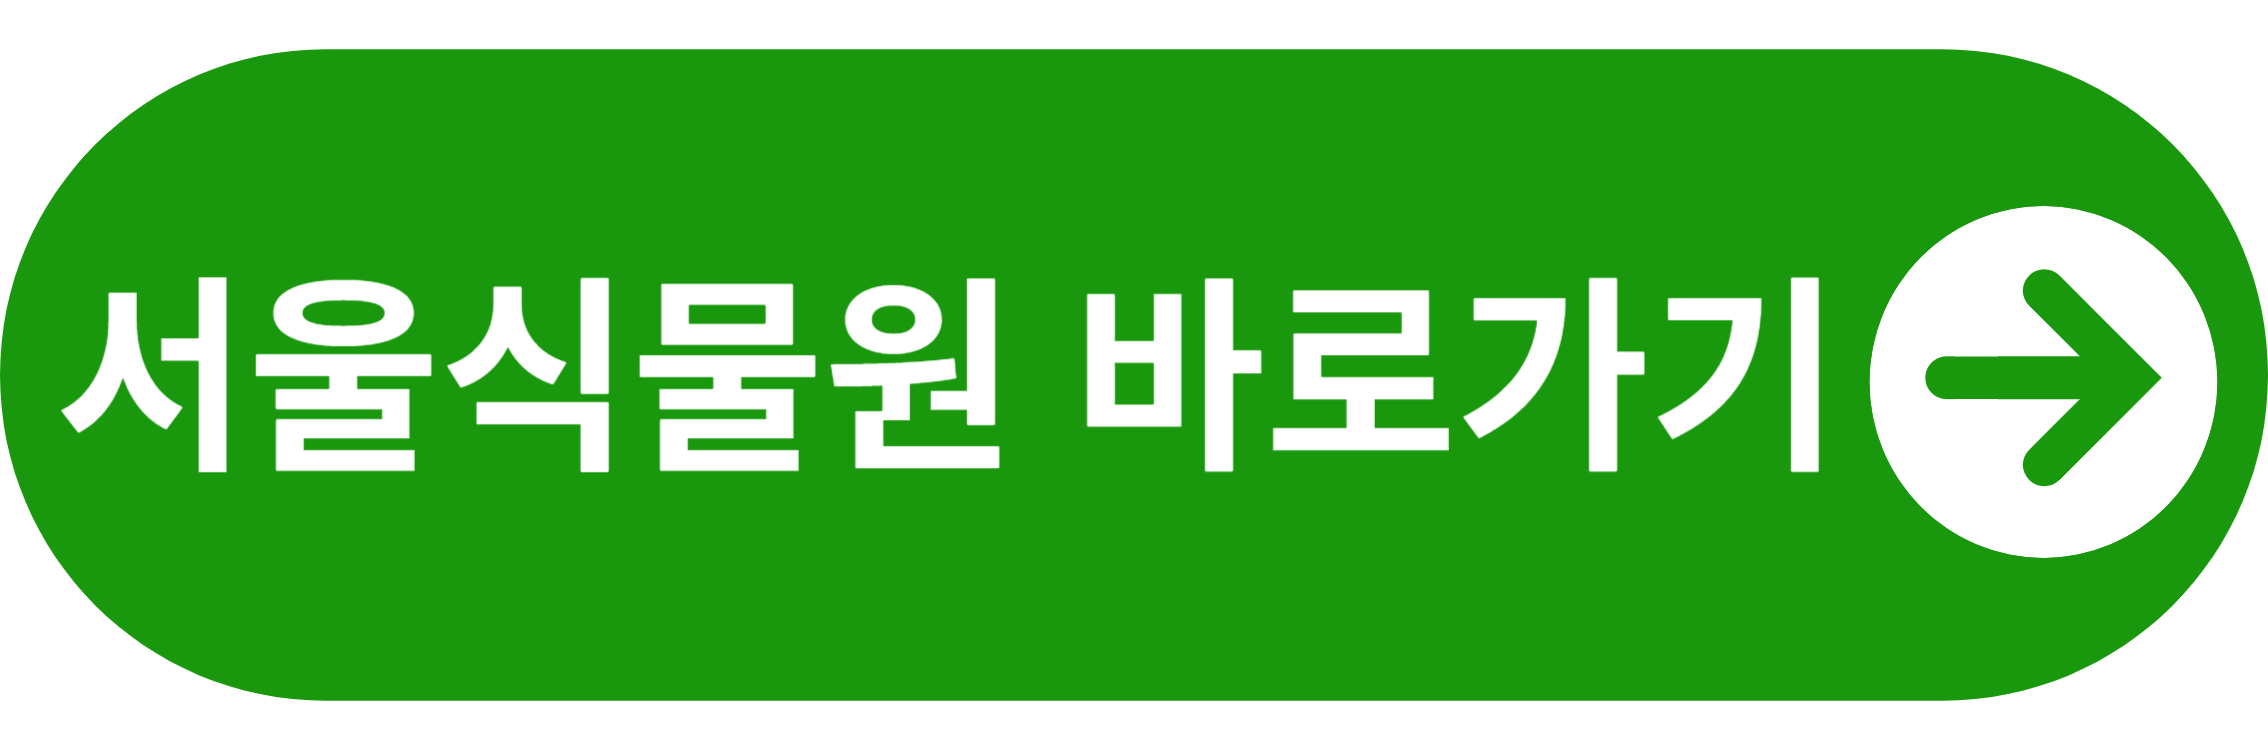 서울식물원 바로가기